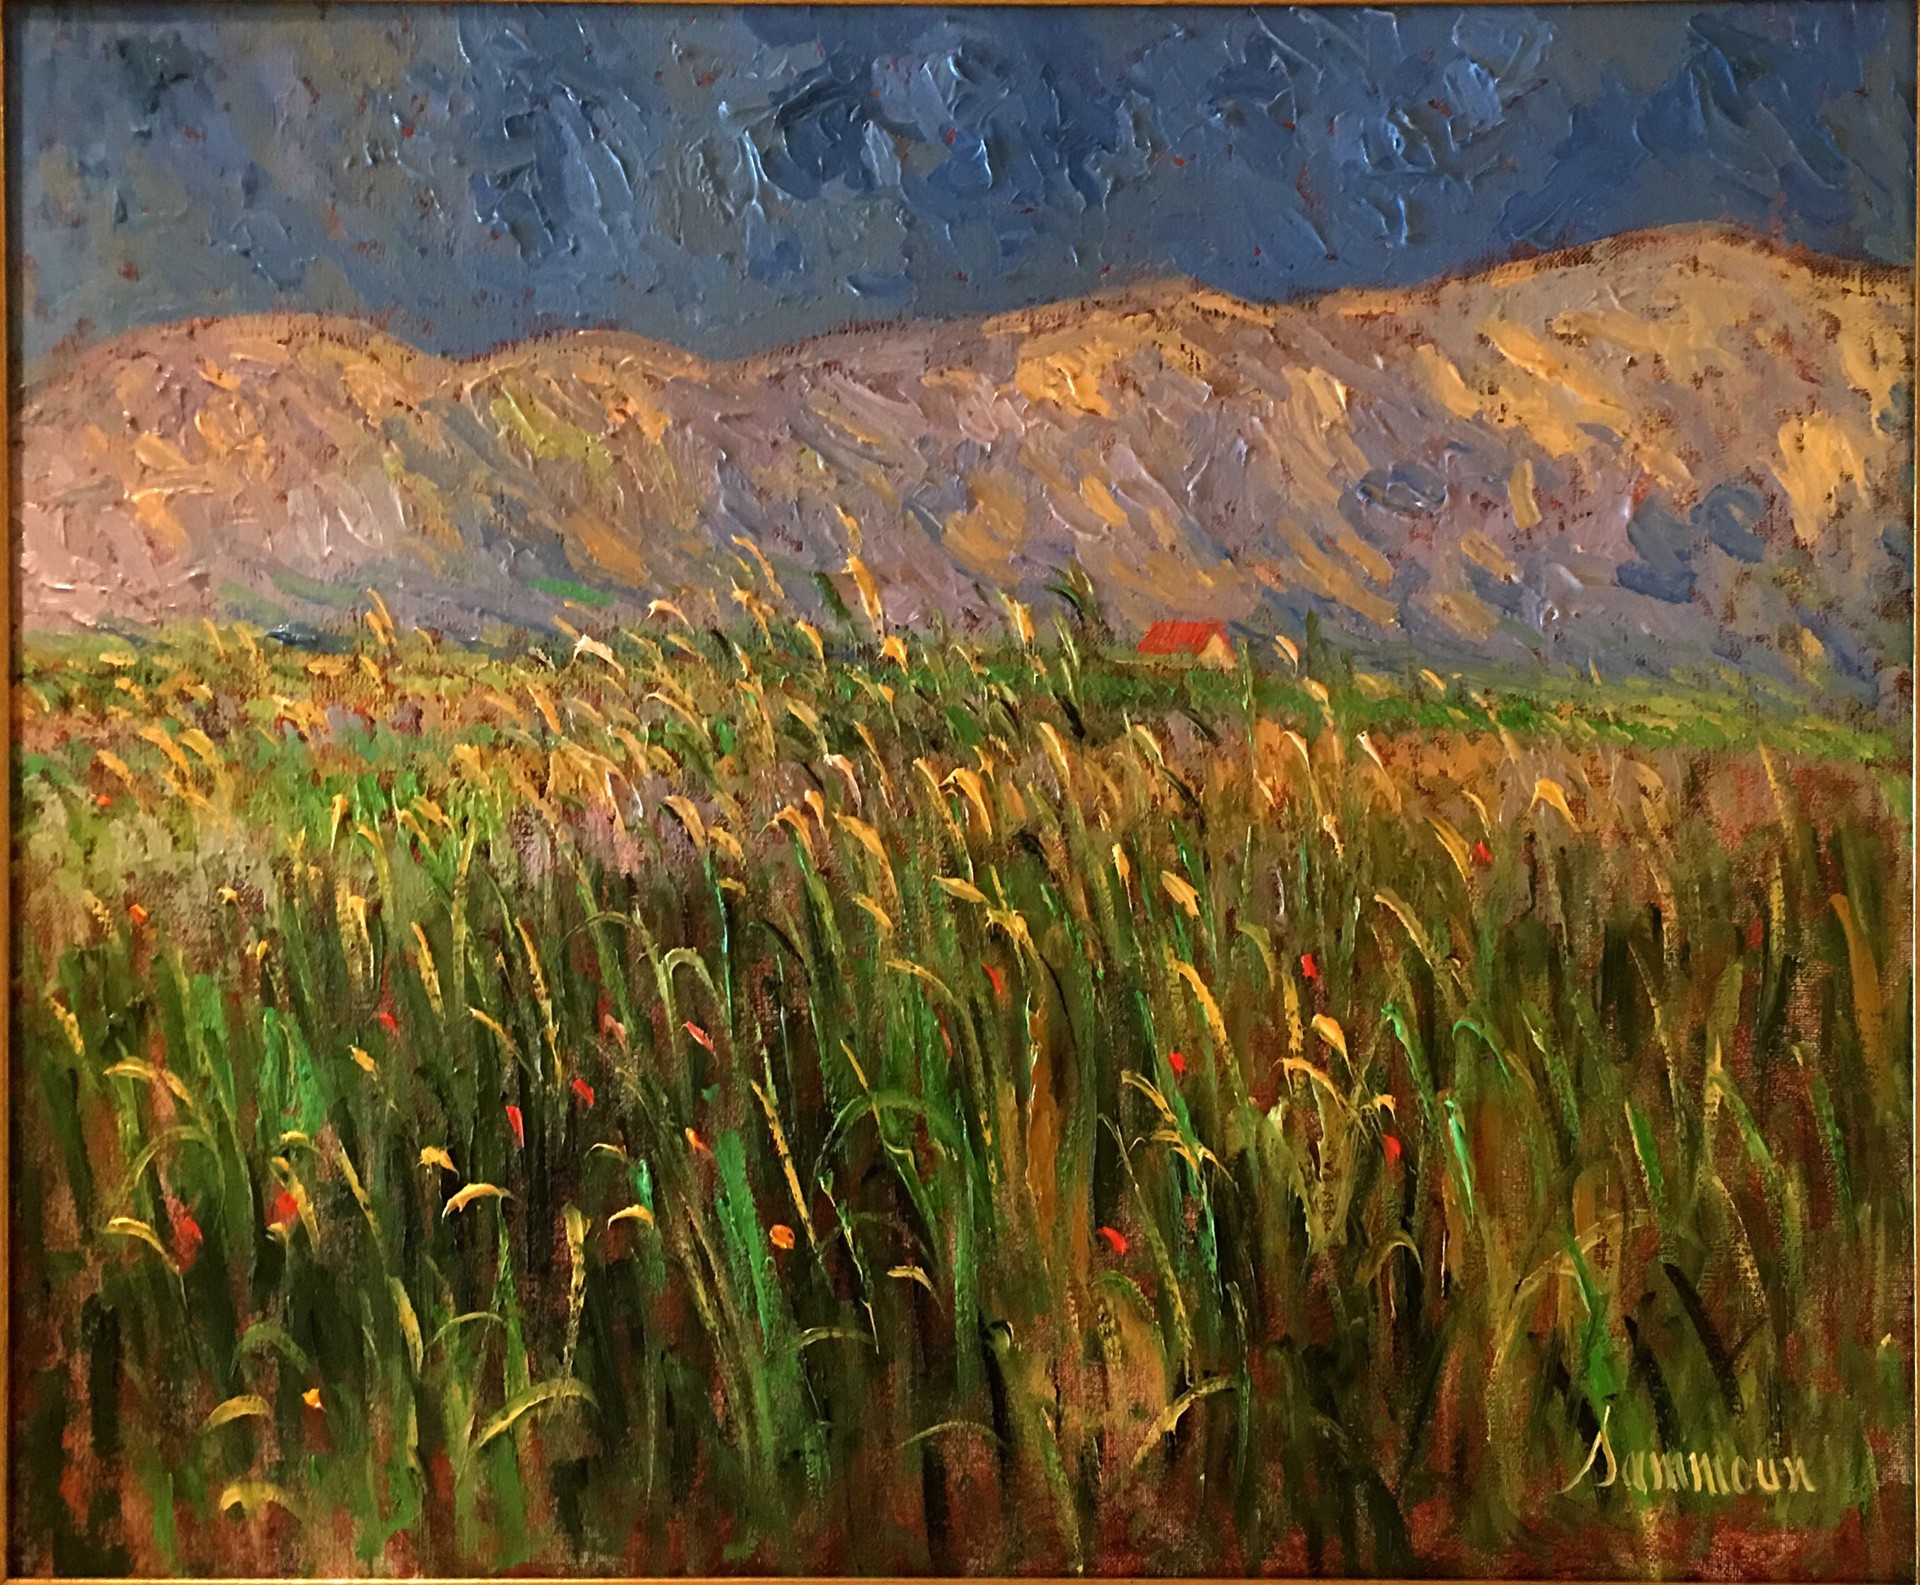 Green Wheat Field by Samir Sammoun